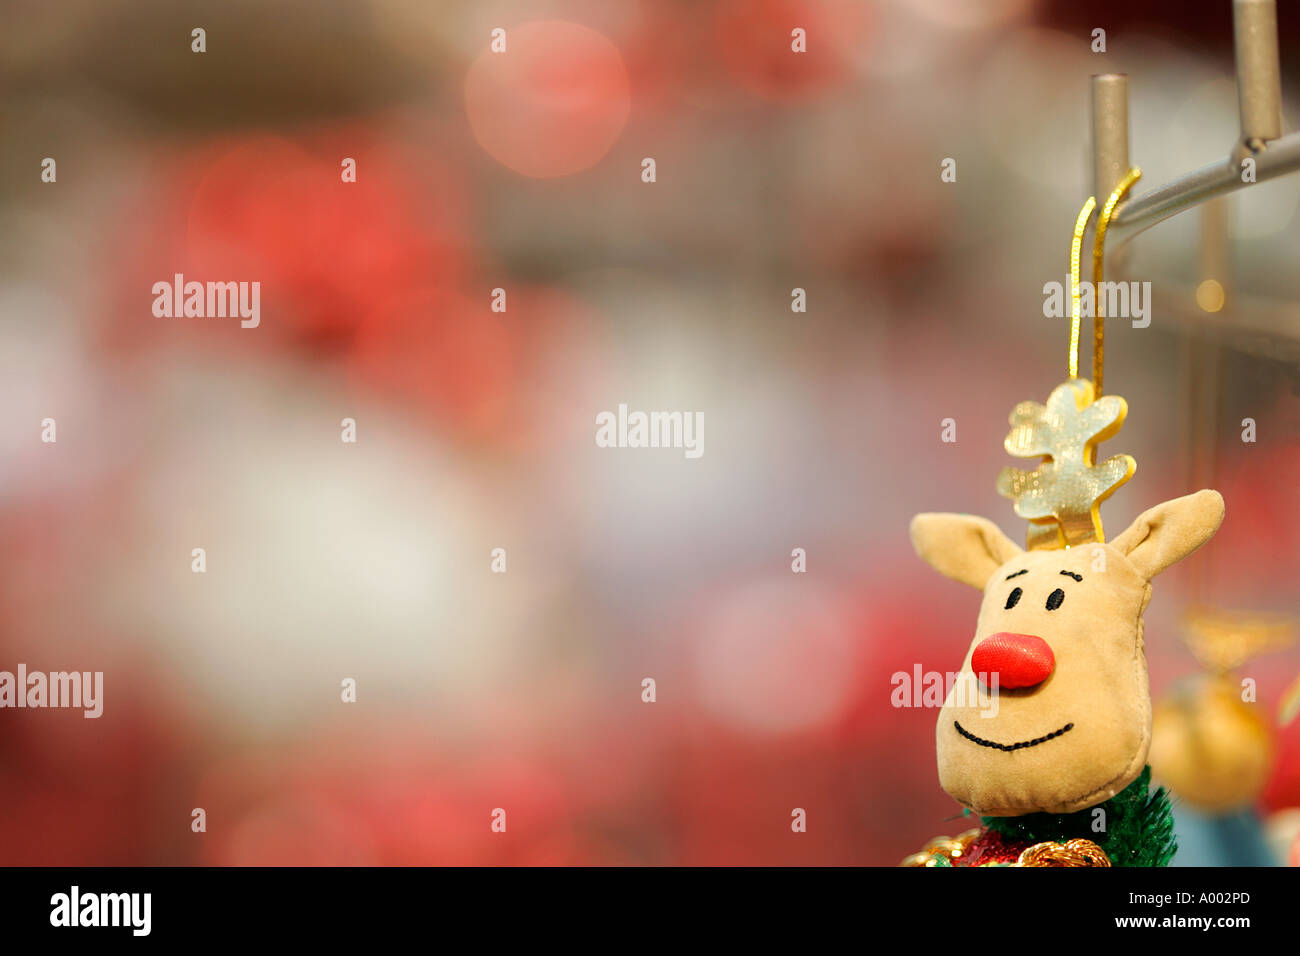 Rudolph das rote Nase Rentier Weihnachten X-Mas Dekoration Spielzeug dekorieren Party Feier weichen Geschenke Weihnachtsbeleuchtung Neujahr Stockfoto